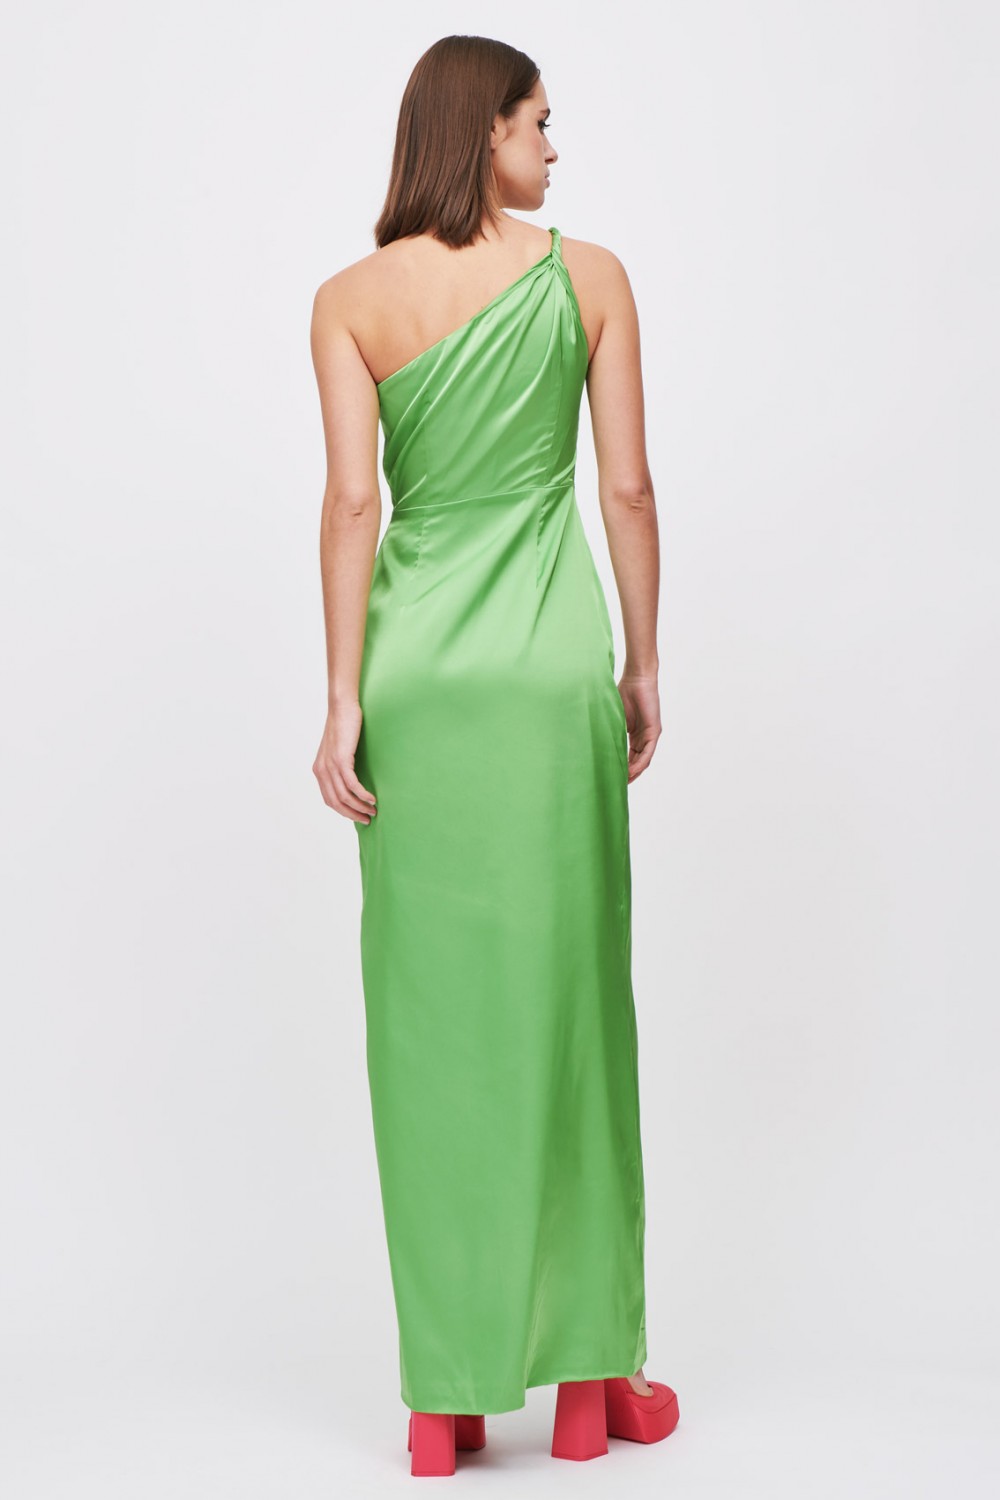 One shoulder green dress